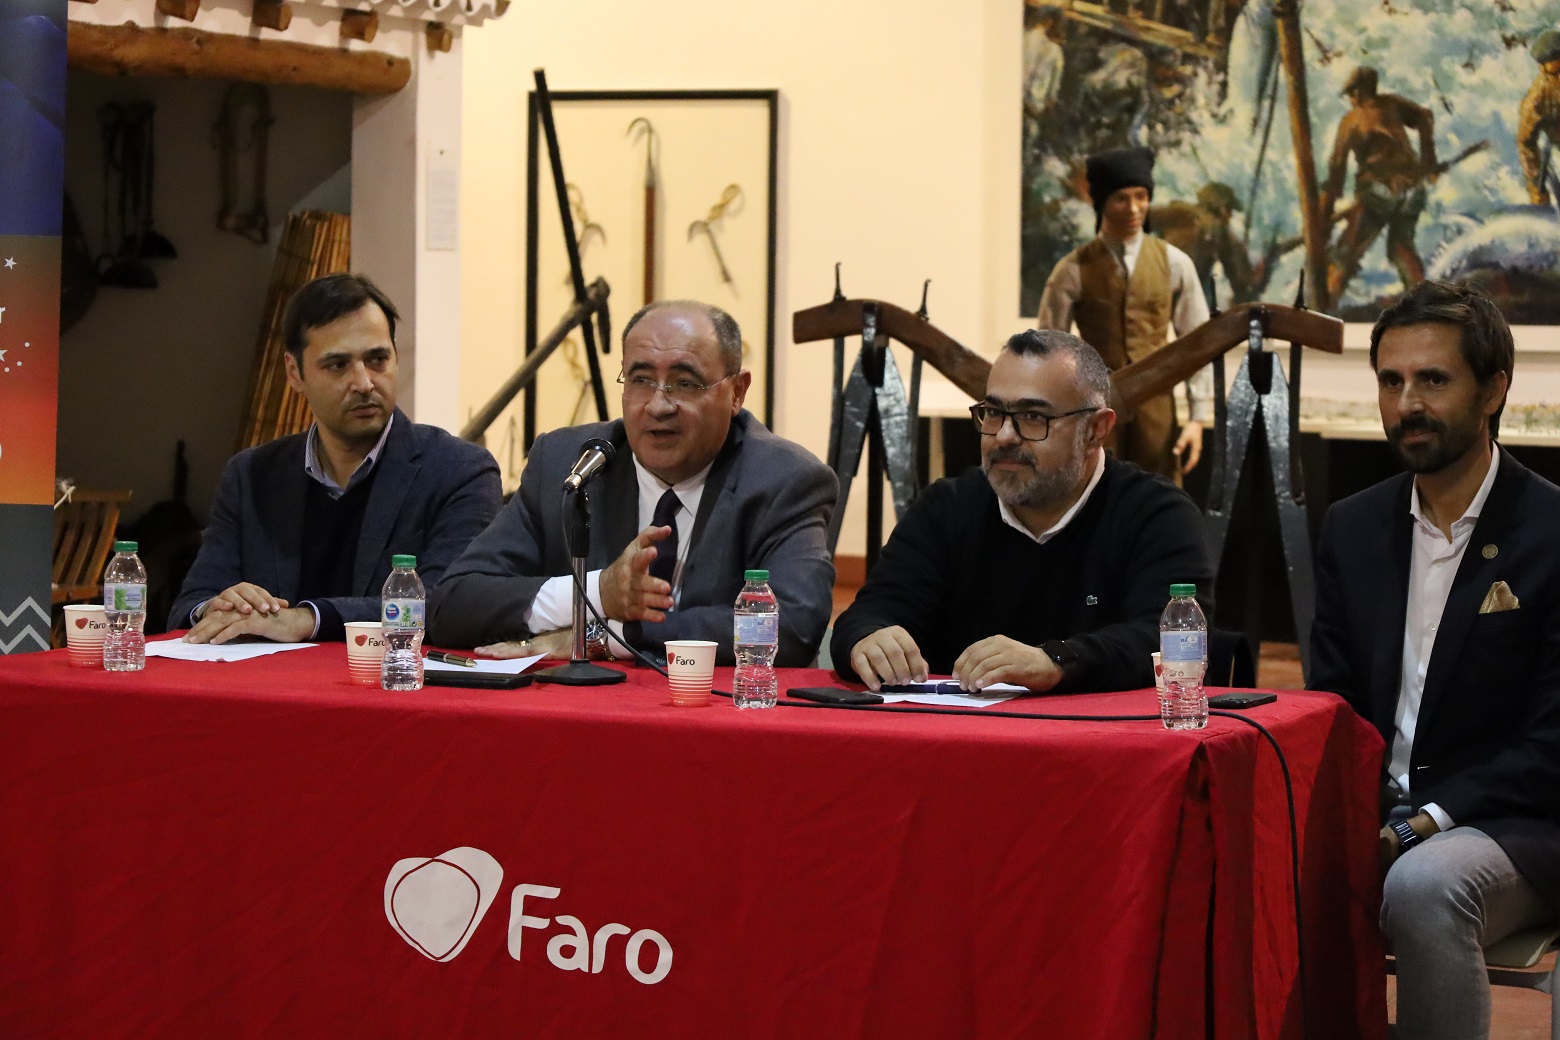 Município de Faro apresenta programação de Natal e passagem de ano